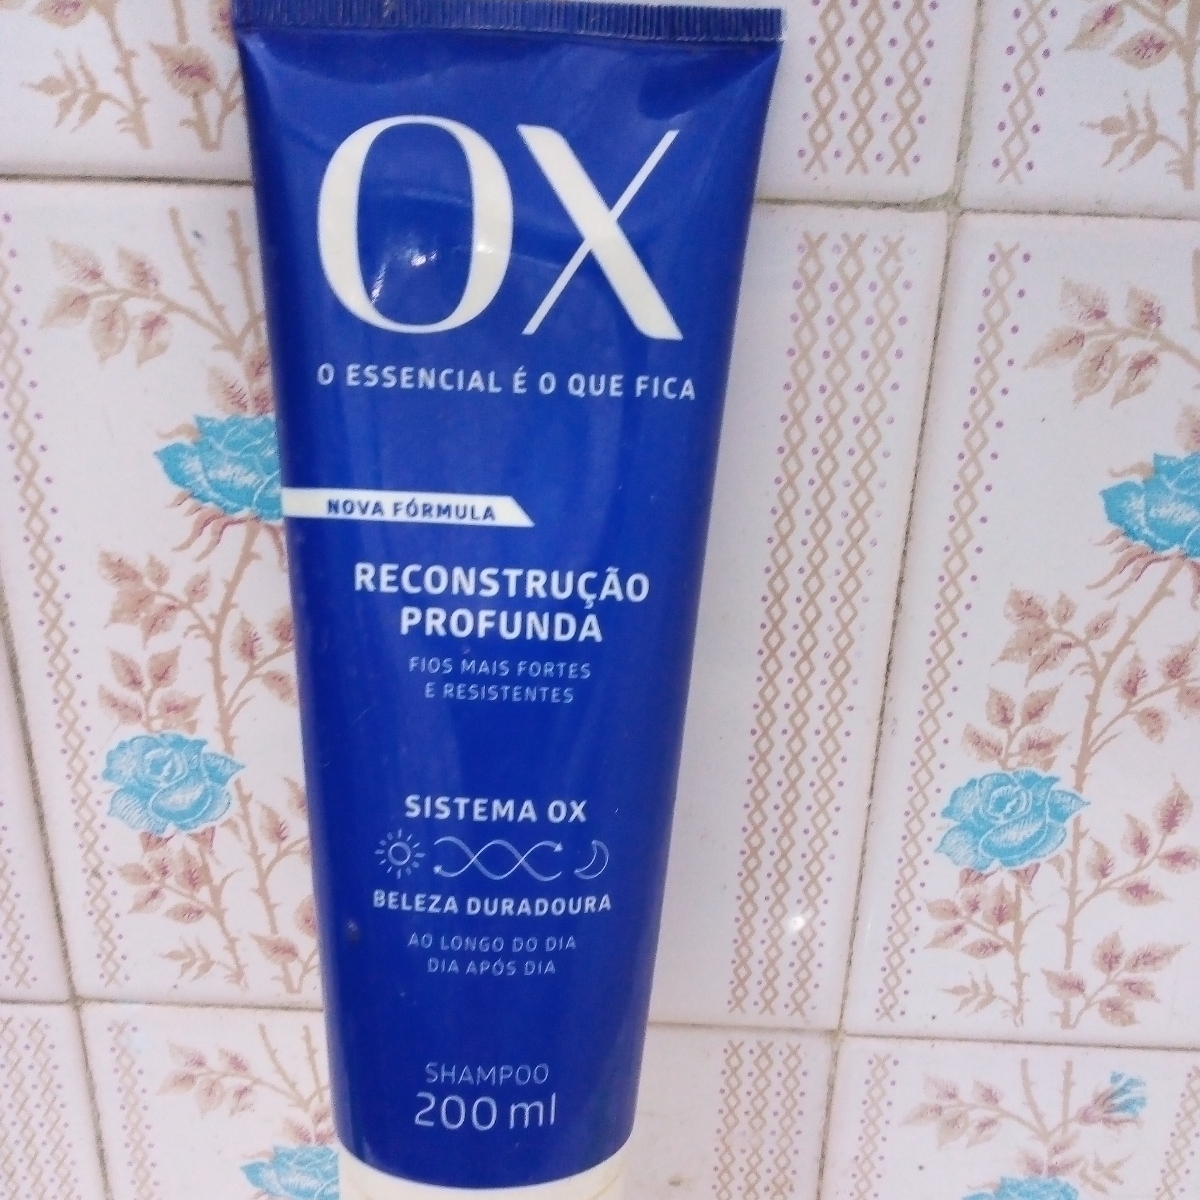 Flora Shampoo OX Review